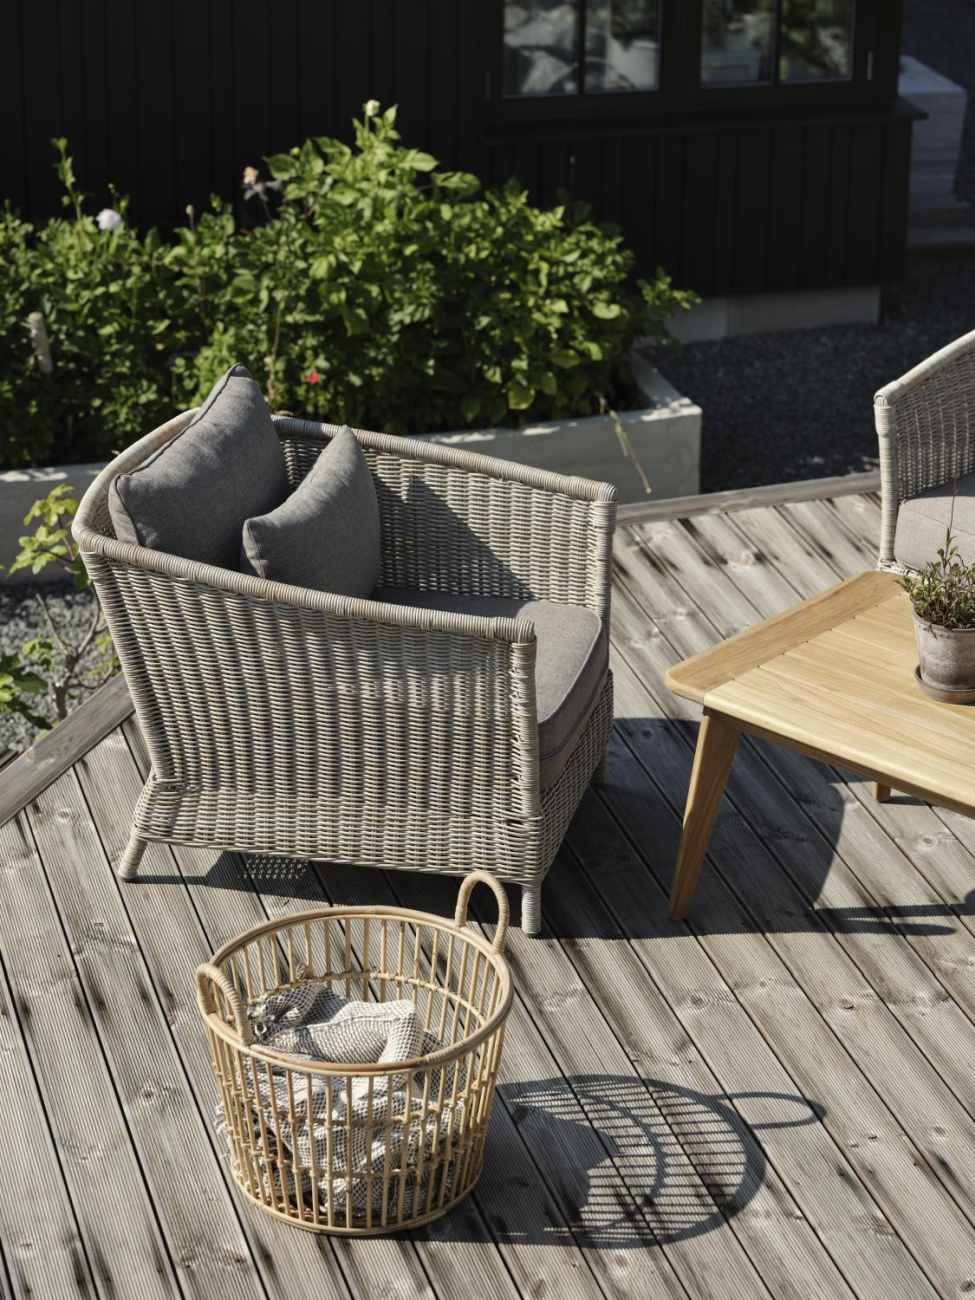 Der Gartensessel Aster überzeugt mit seinem modernen Design. Gefertigt wurde er aus Rattan, welches einen Beigen Farbton besitzt. Das Gestell ist auch aus Metall und hat eine schwarze Farbe. Die Sitzhöhe des Sessels beträgt 41 cm.